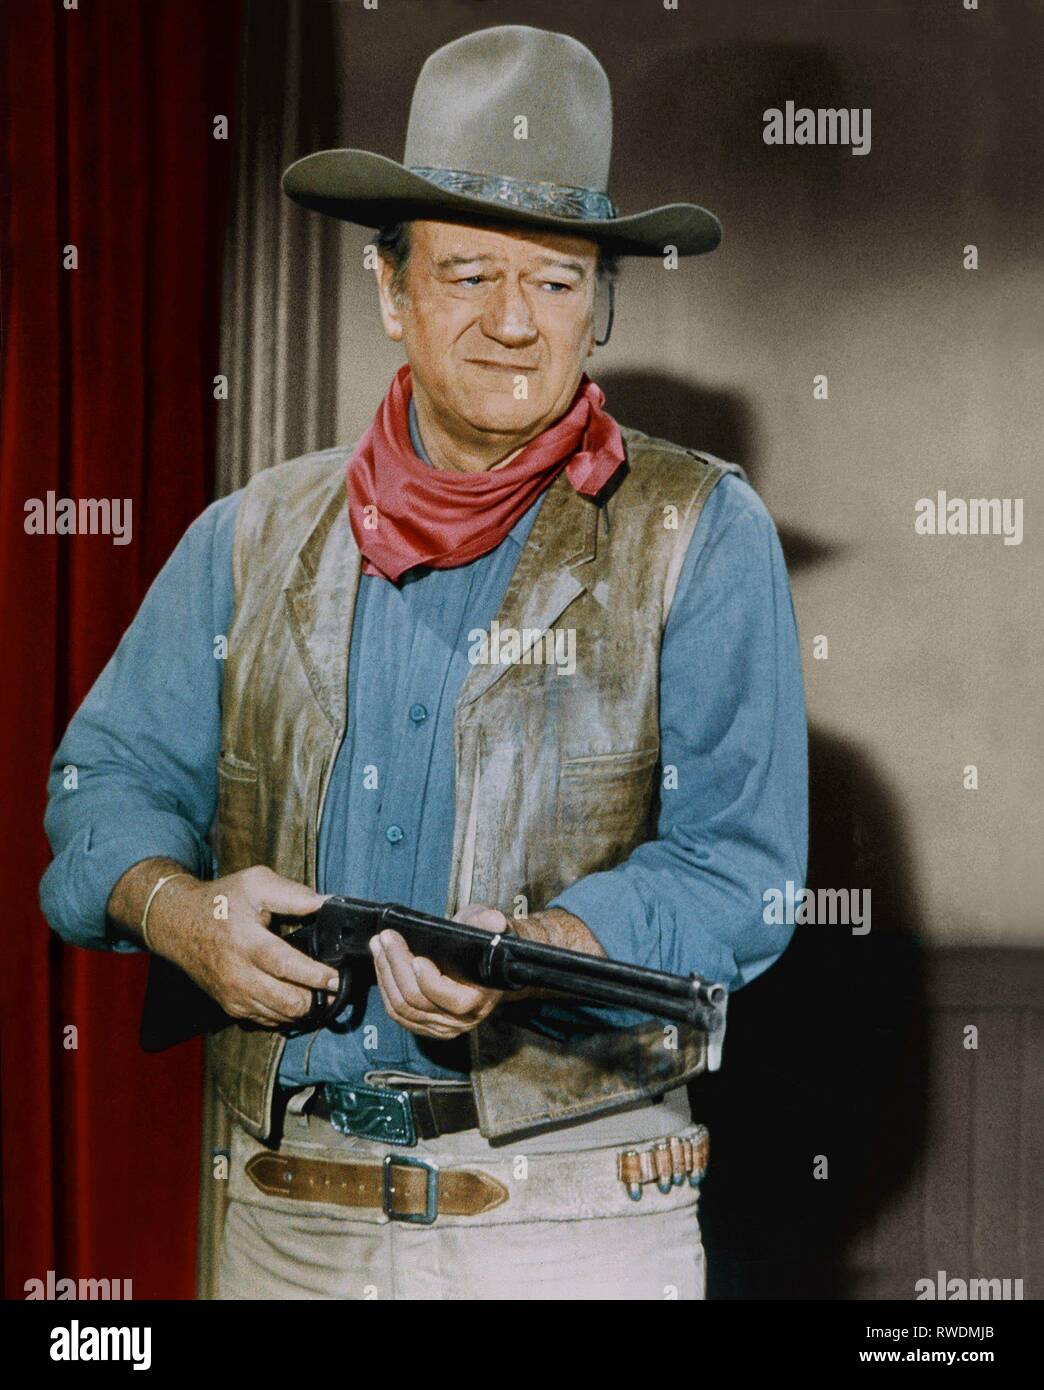 John wayne cowboy hi-res stock photography and images - Alamy